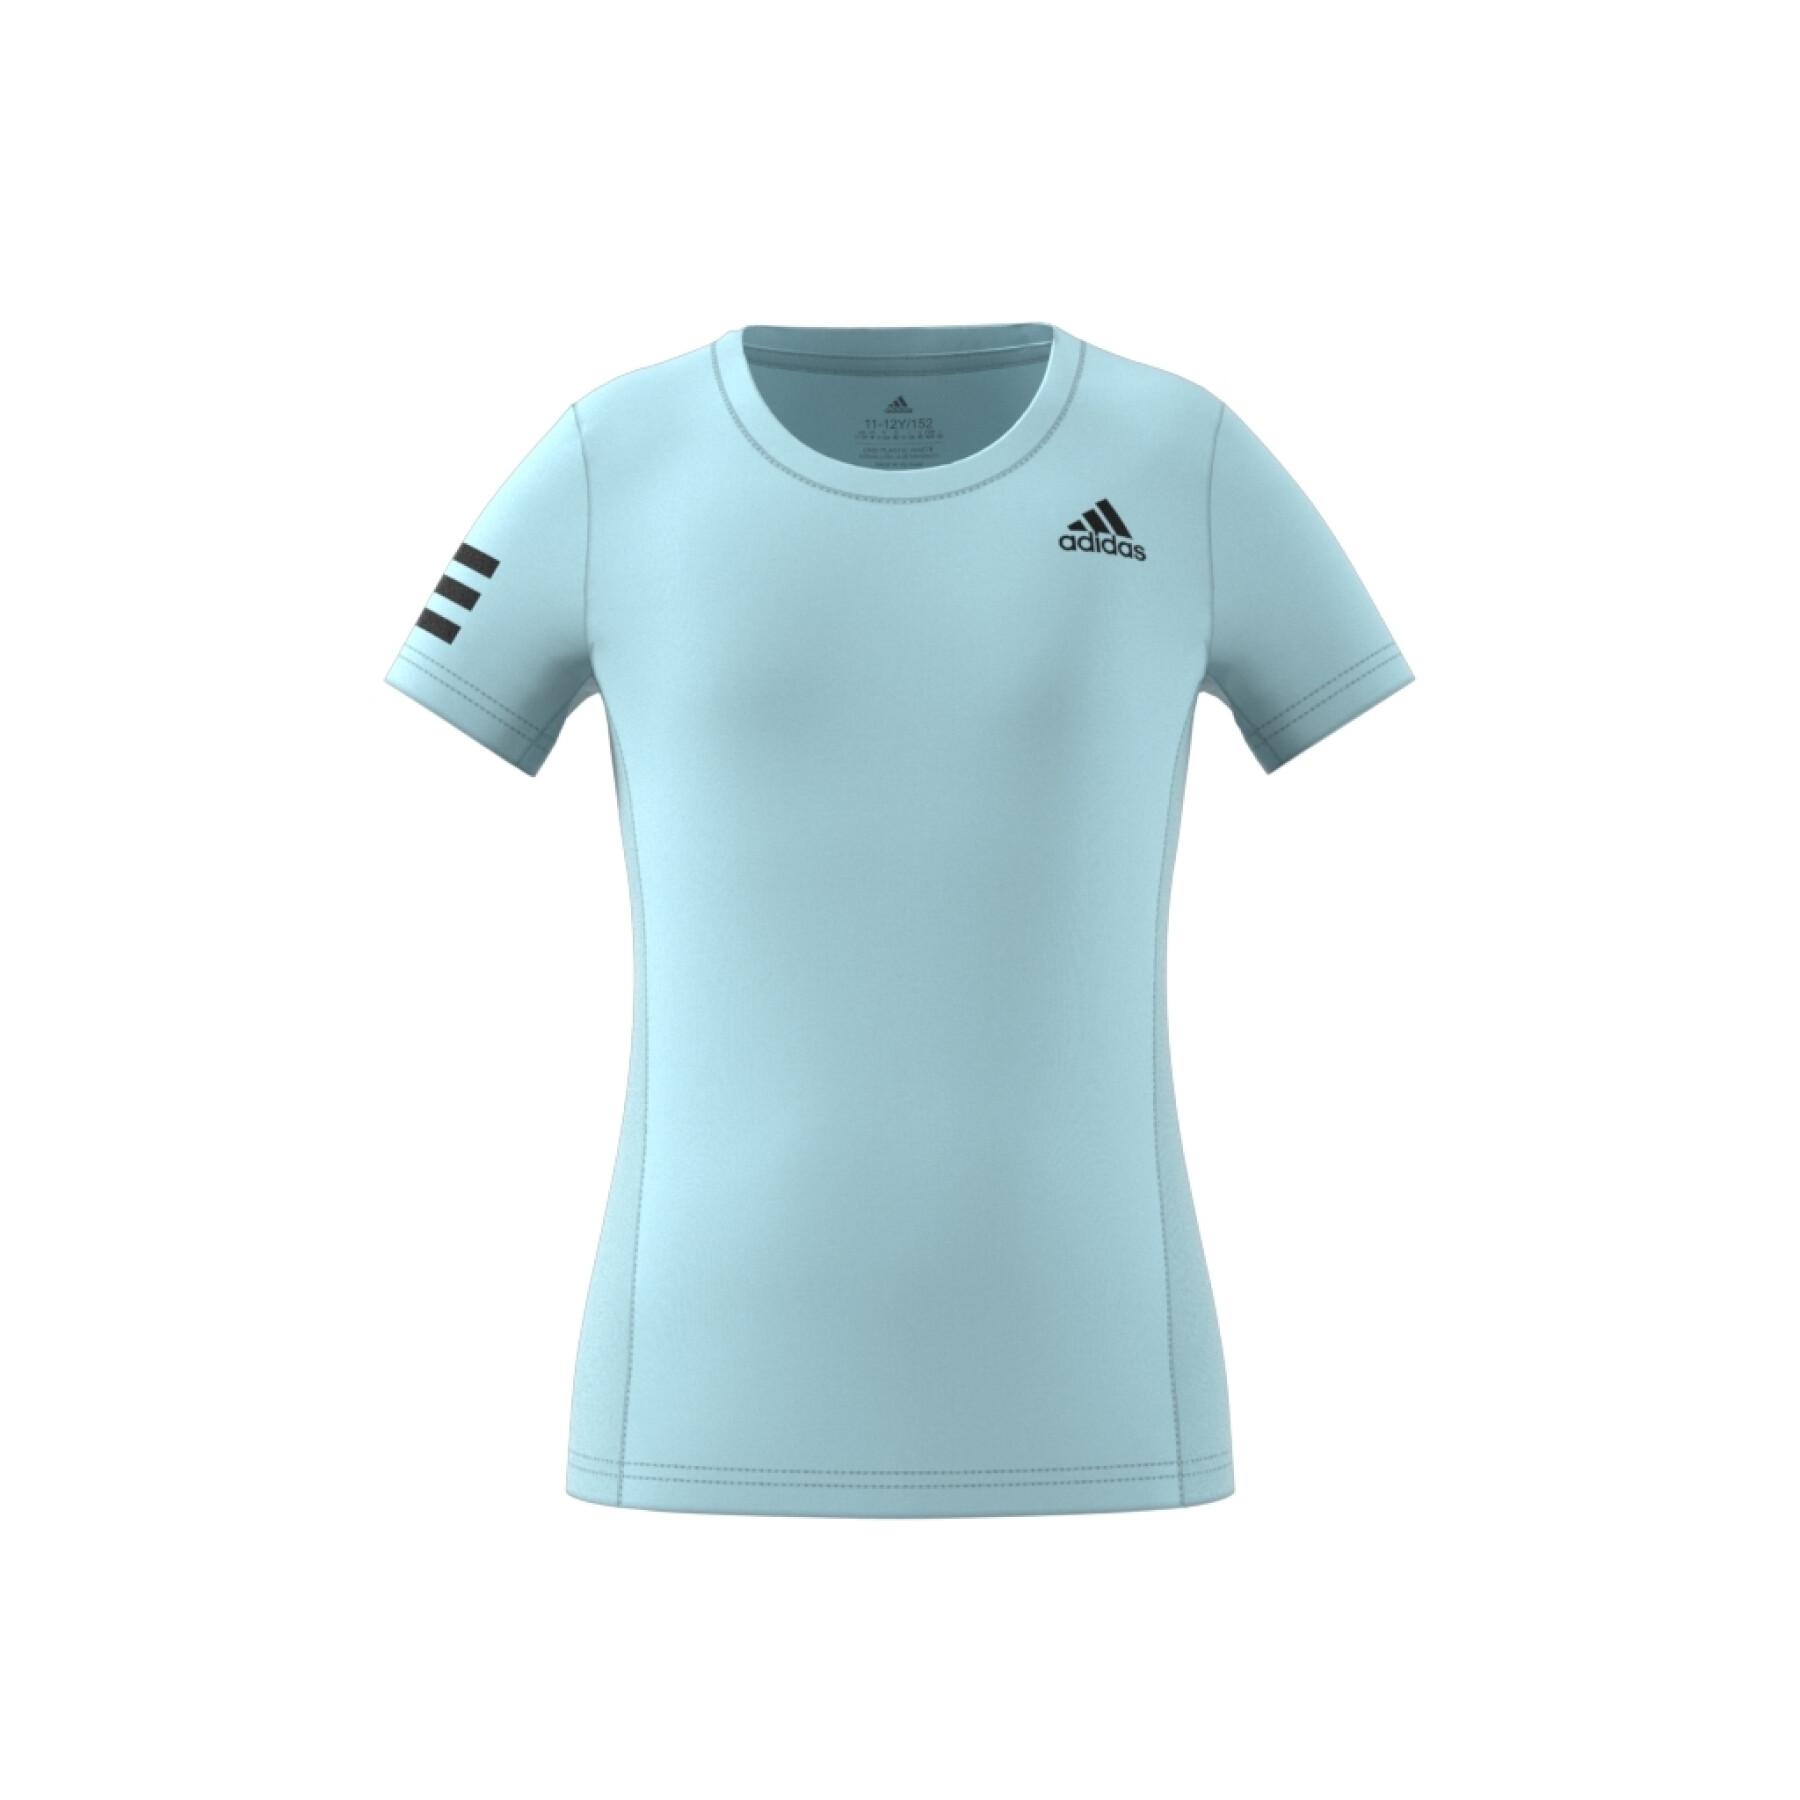 Camiseta del club de tenis para niñas adidas